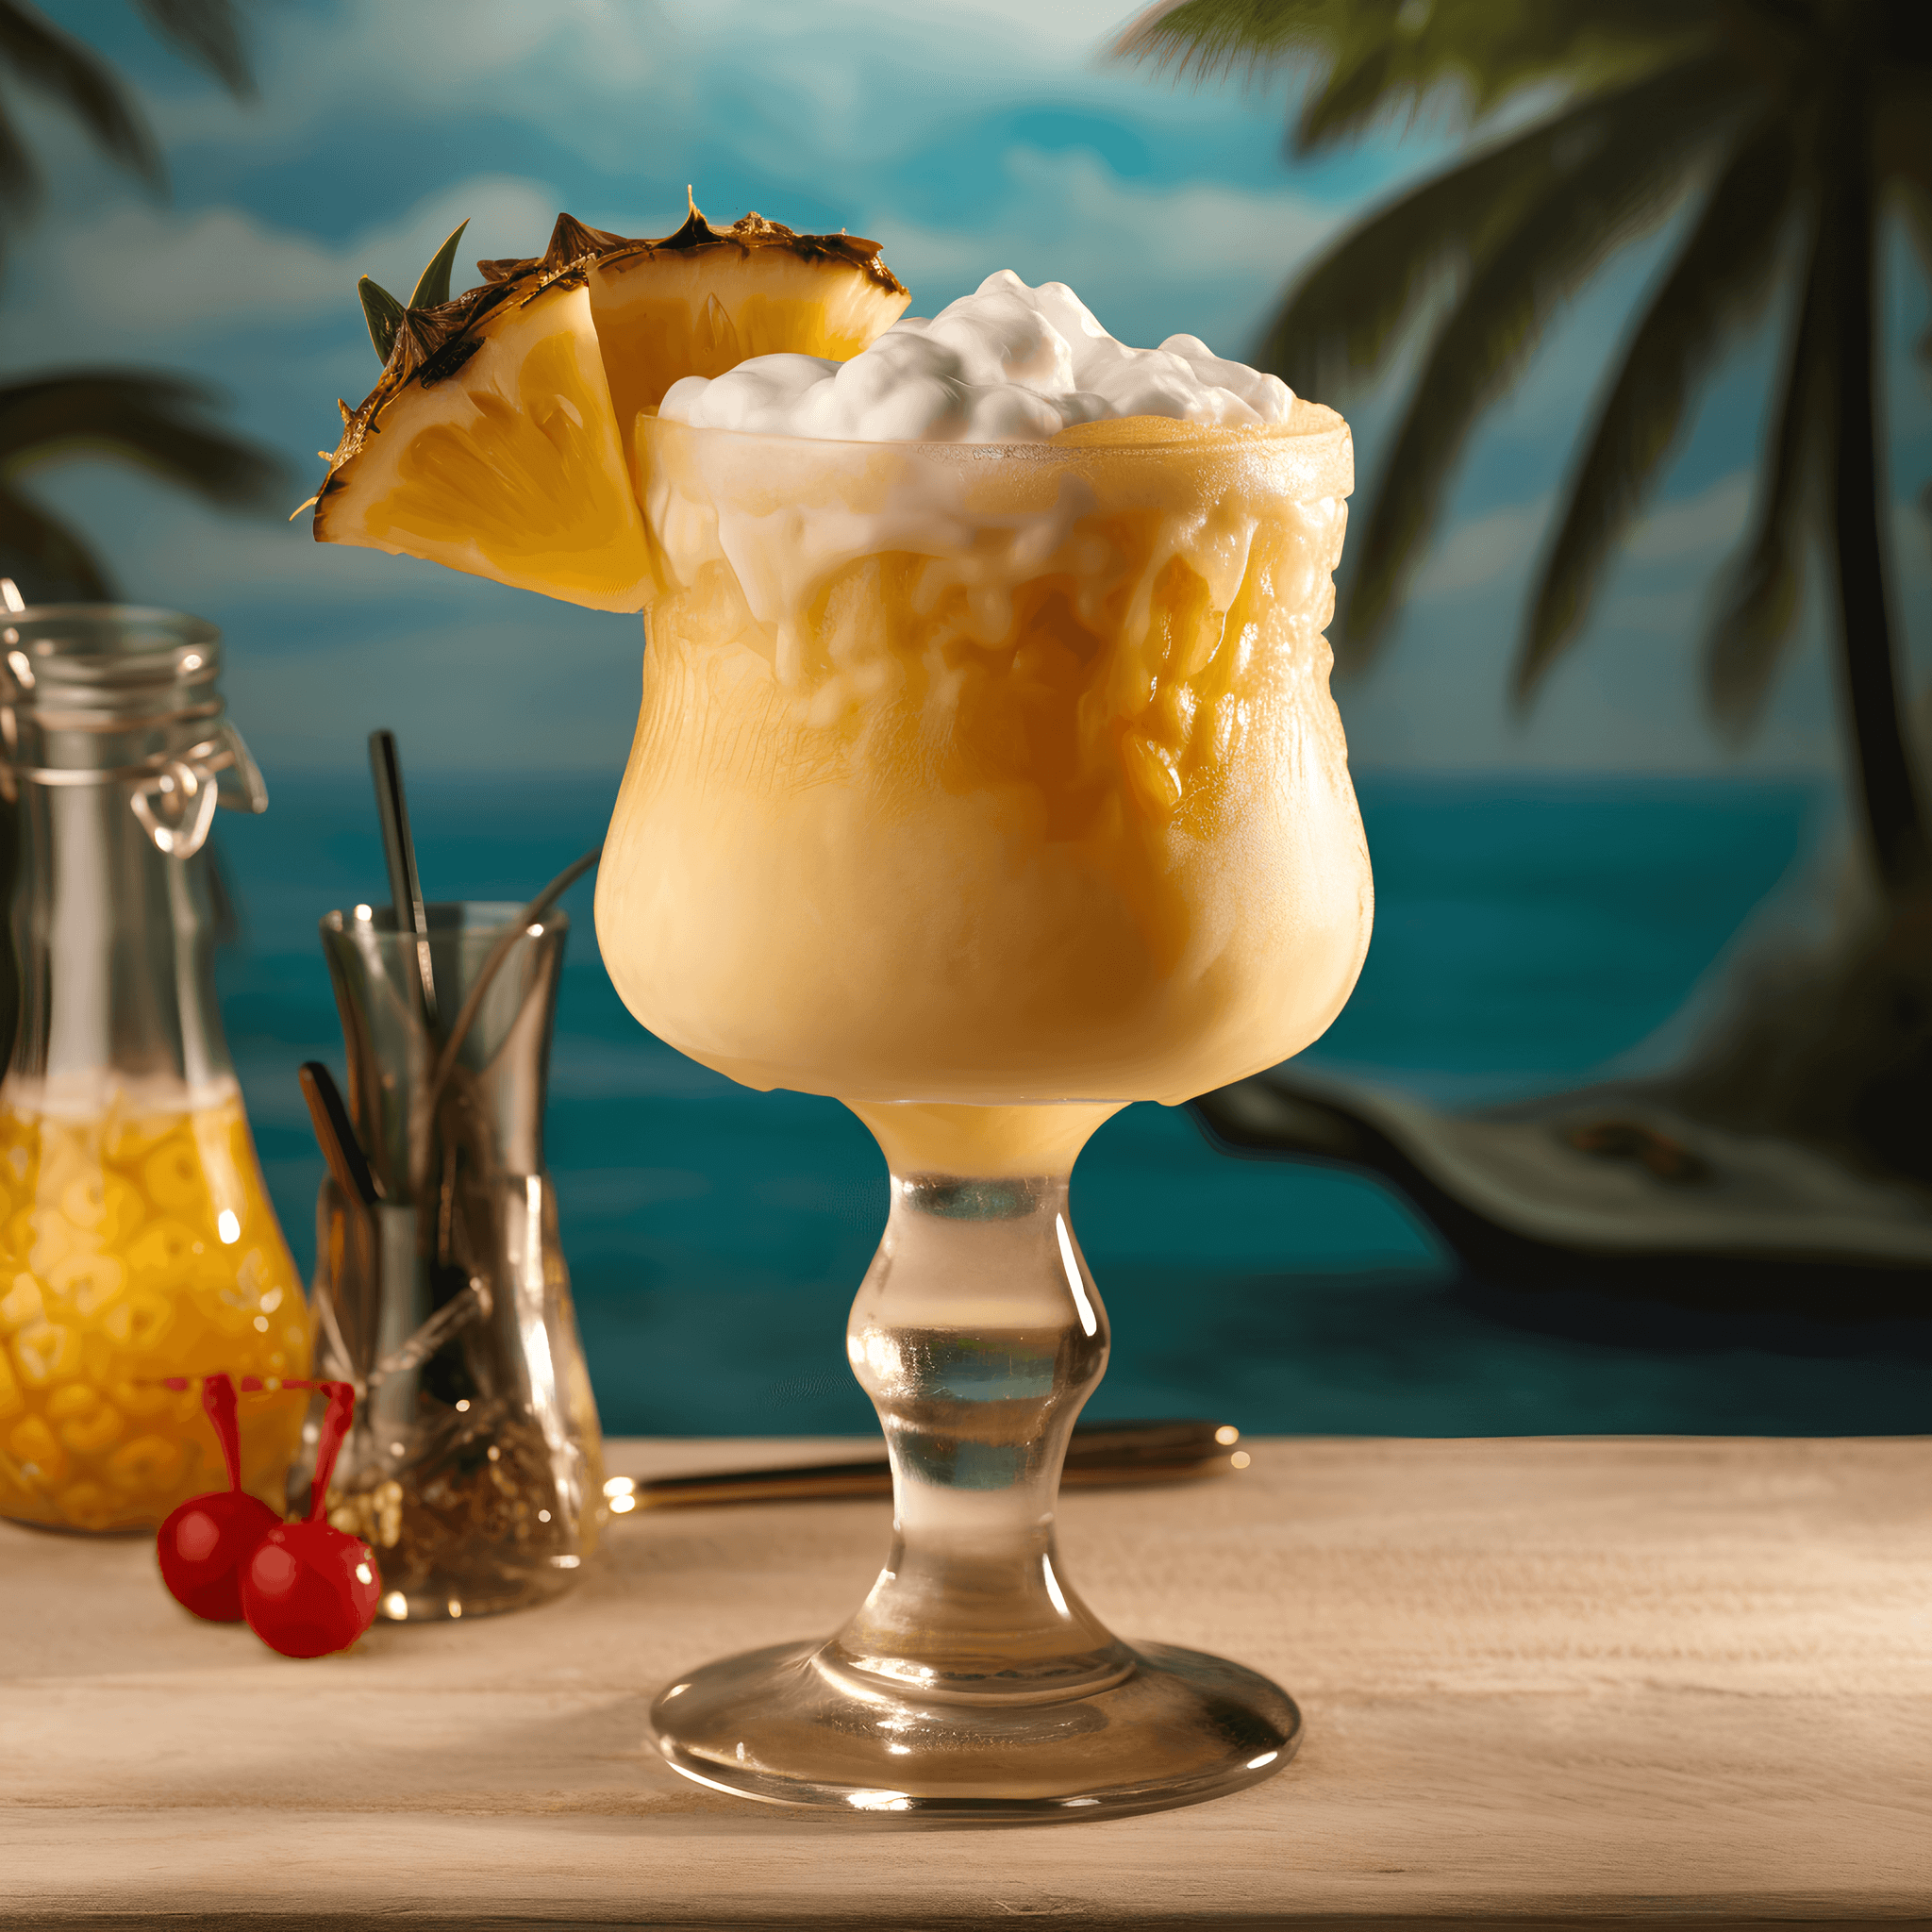 El Piña Colada es un cóctel dulce, cremoso y afrutado con una textura suave. Los sabores de piña y coco se mezclan armoniosamente, creando una sensación de sabor tropical. El ron agrega un calor y profundidad sutiles a la bebida.